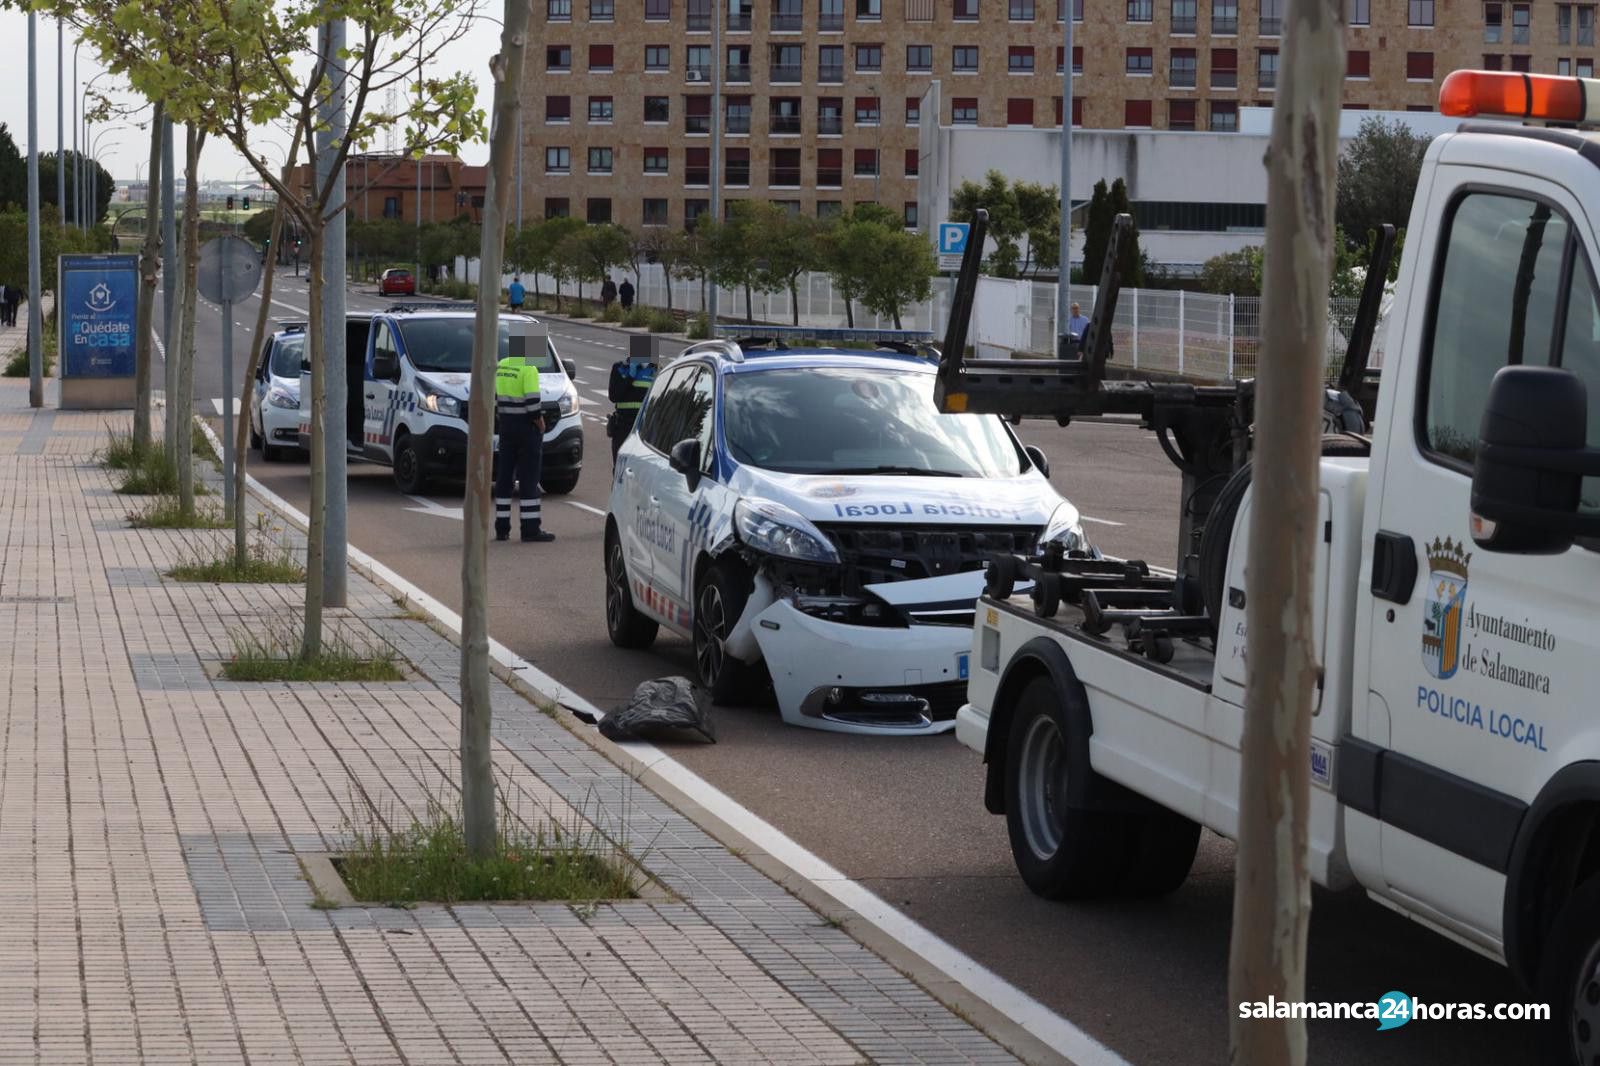  Accidente jefe Policía Local Salamanca (9) 